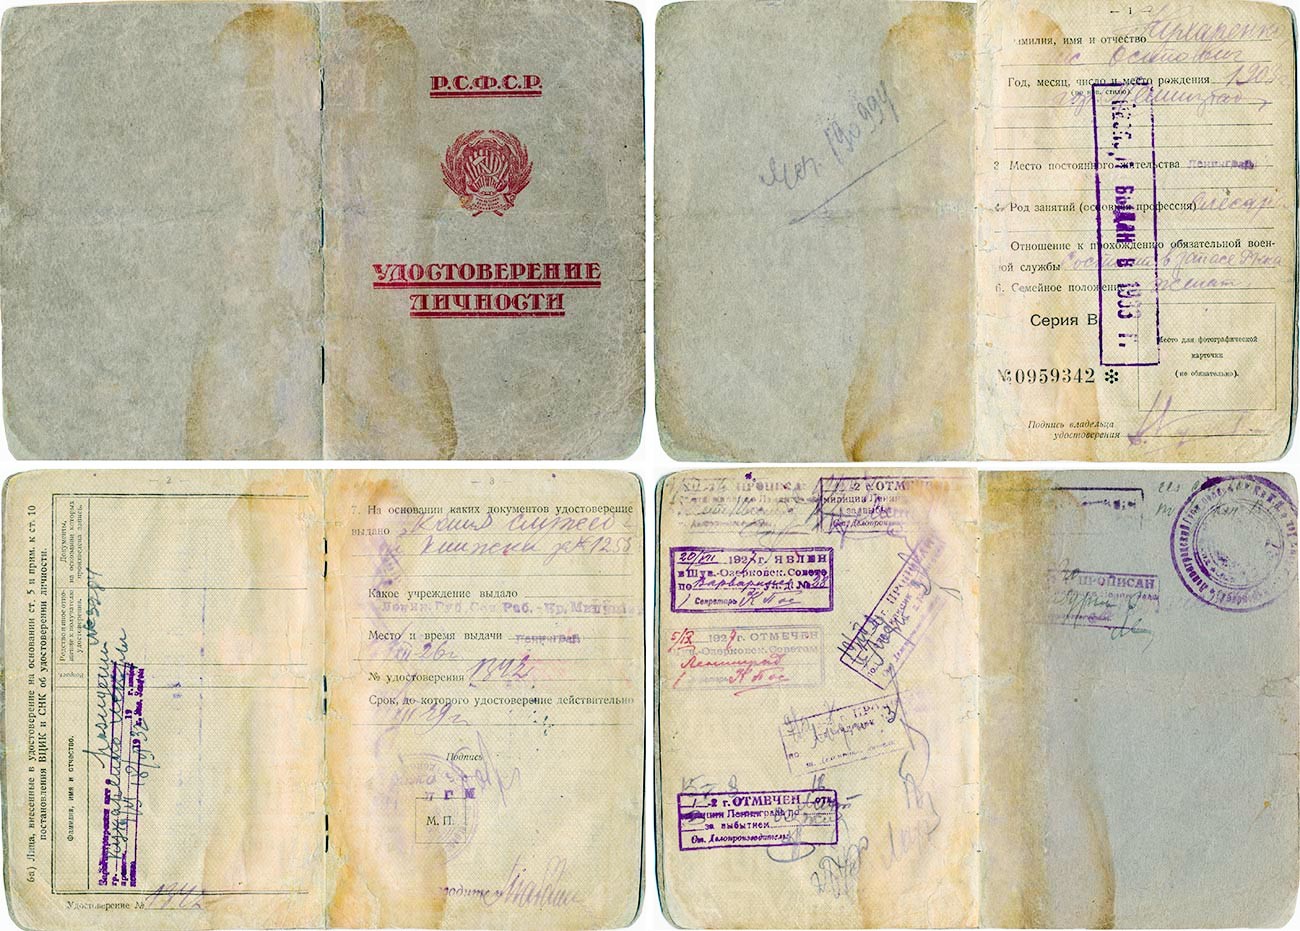 プロピスカのスタンプされた身分証明書、1926年